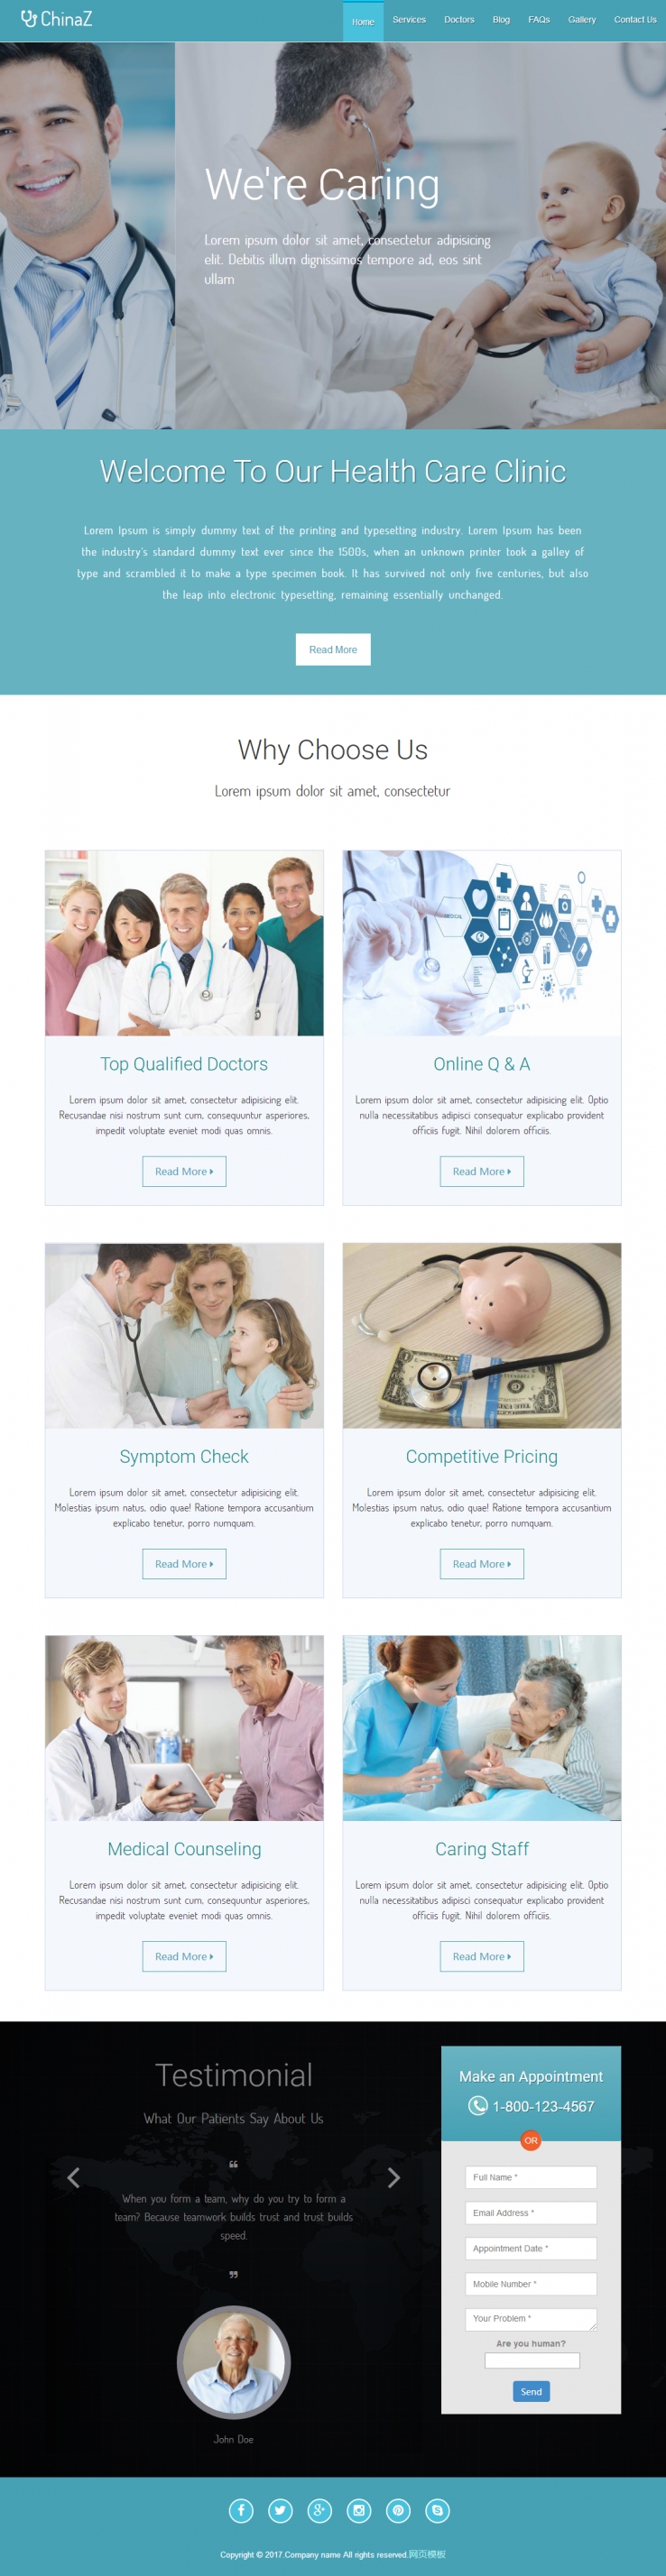 蓝色大气风格的医疗器械企业网站模板